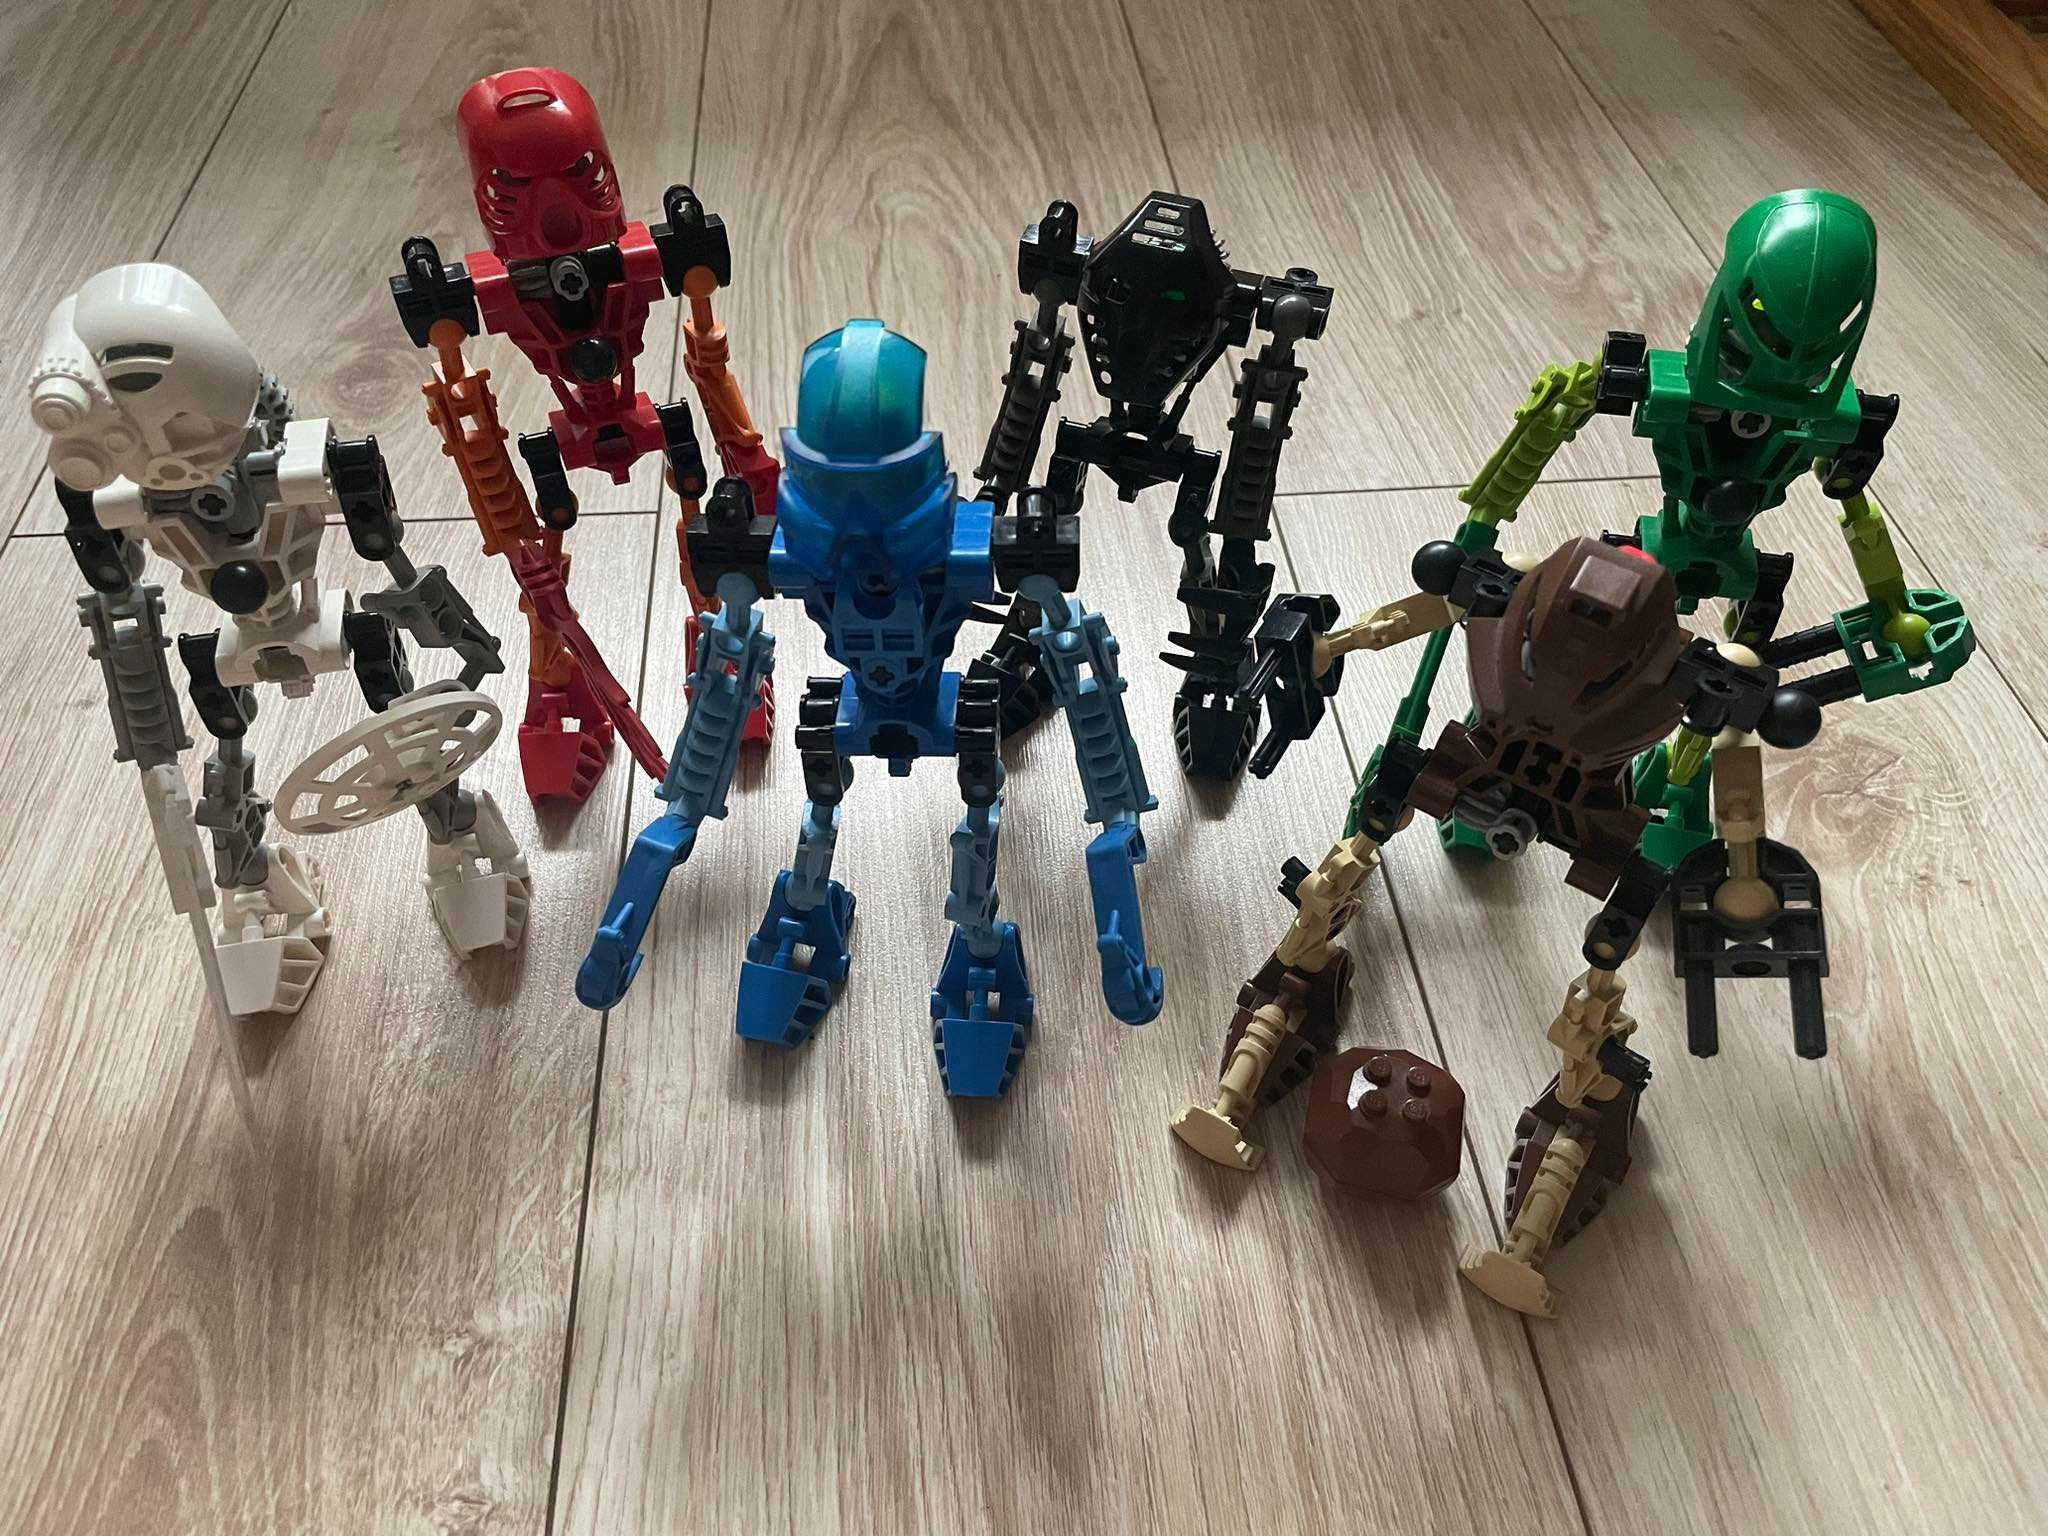 Lego Bionicle Tahu, Lewa, Gali, Pohatu, Onua, Kopaka